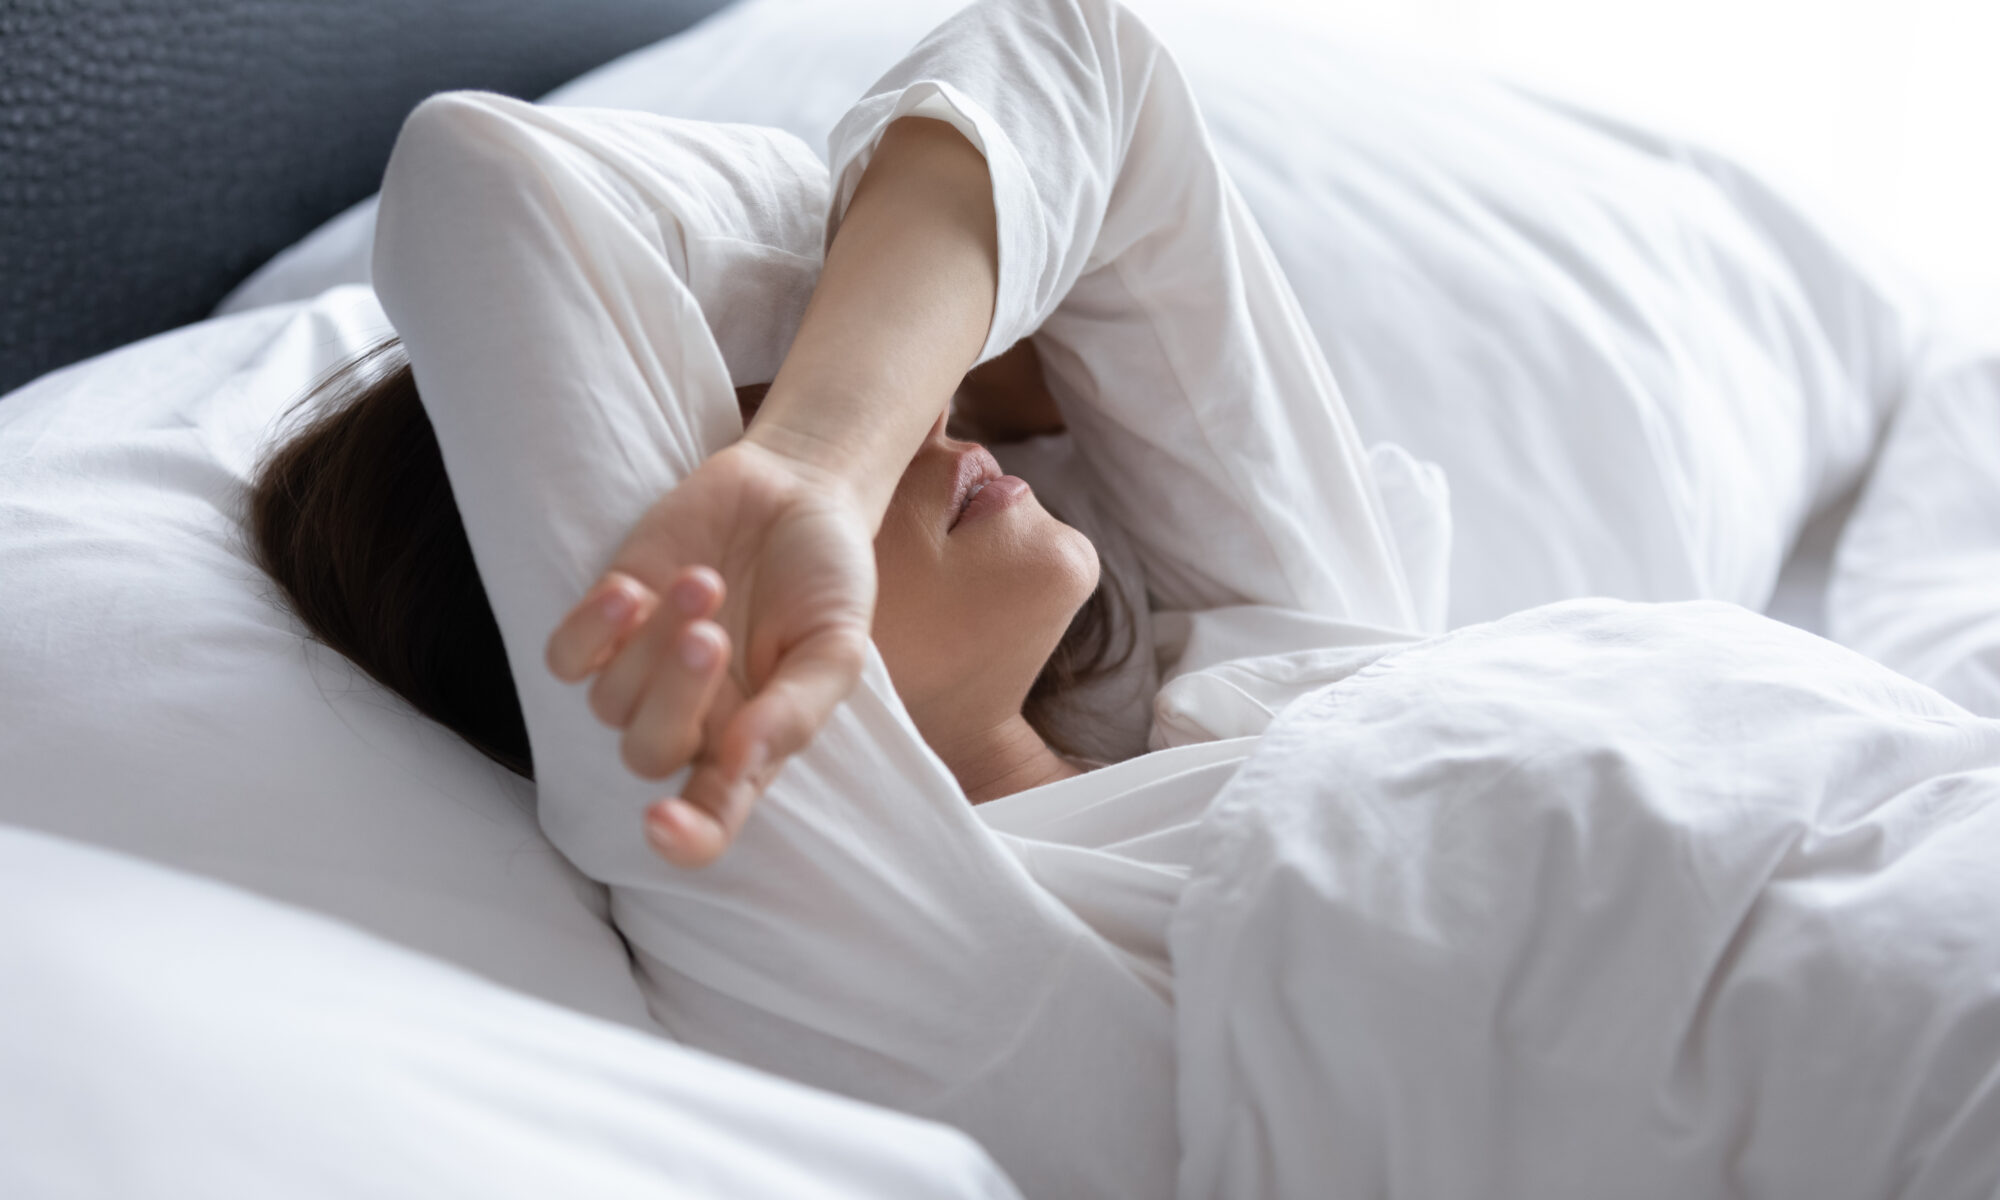 Dormir poco nos hace más vulnerables a las enfermedades infecciosas